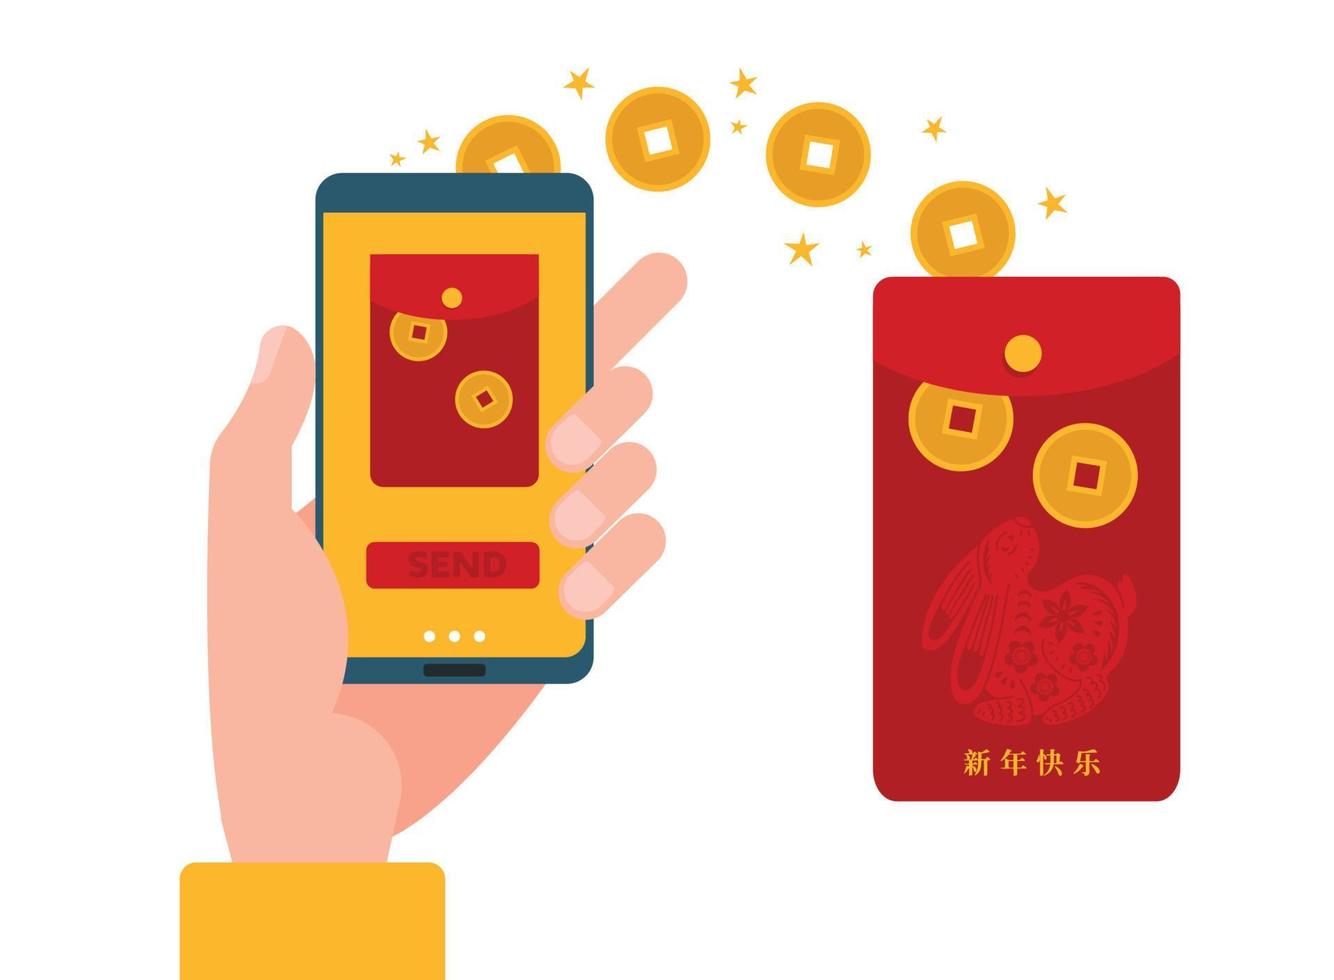 transfert mobile en ligne numérique hongbao. cadeau traditionnel chinois angpao au téléphone. smartphone en main envoyant de l'argent présent à 2023 chy. illustration plate vectorielle isolée. traduction - bonne année, vecteur